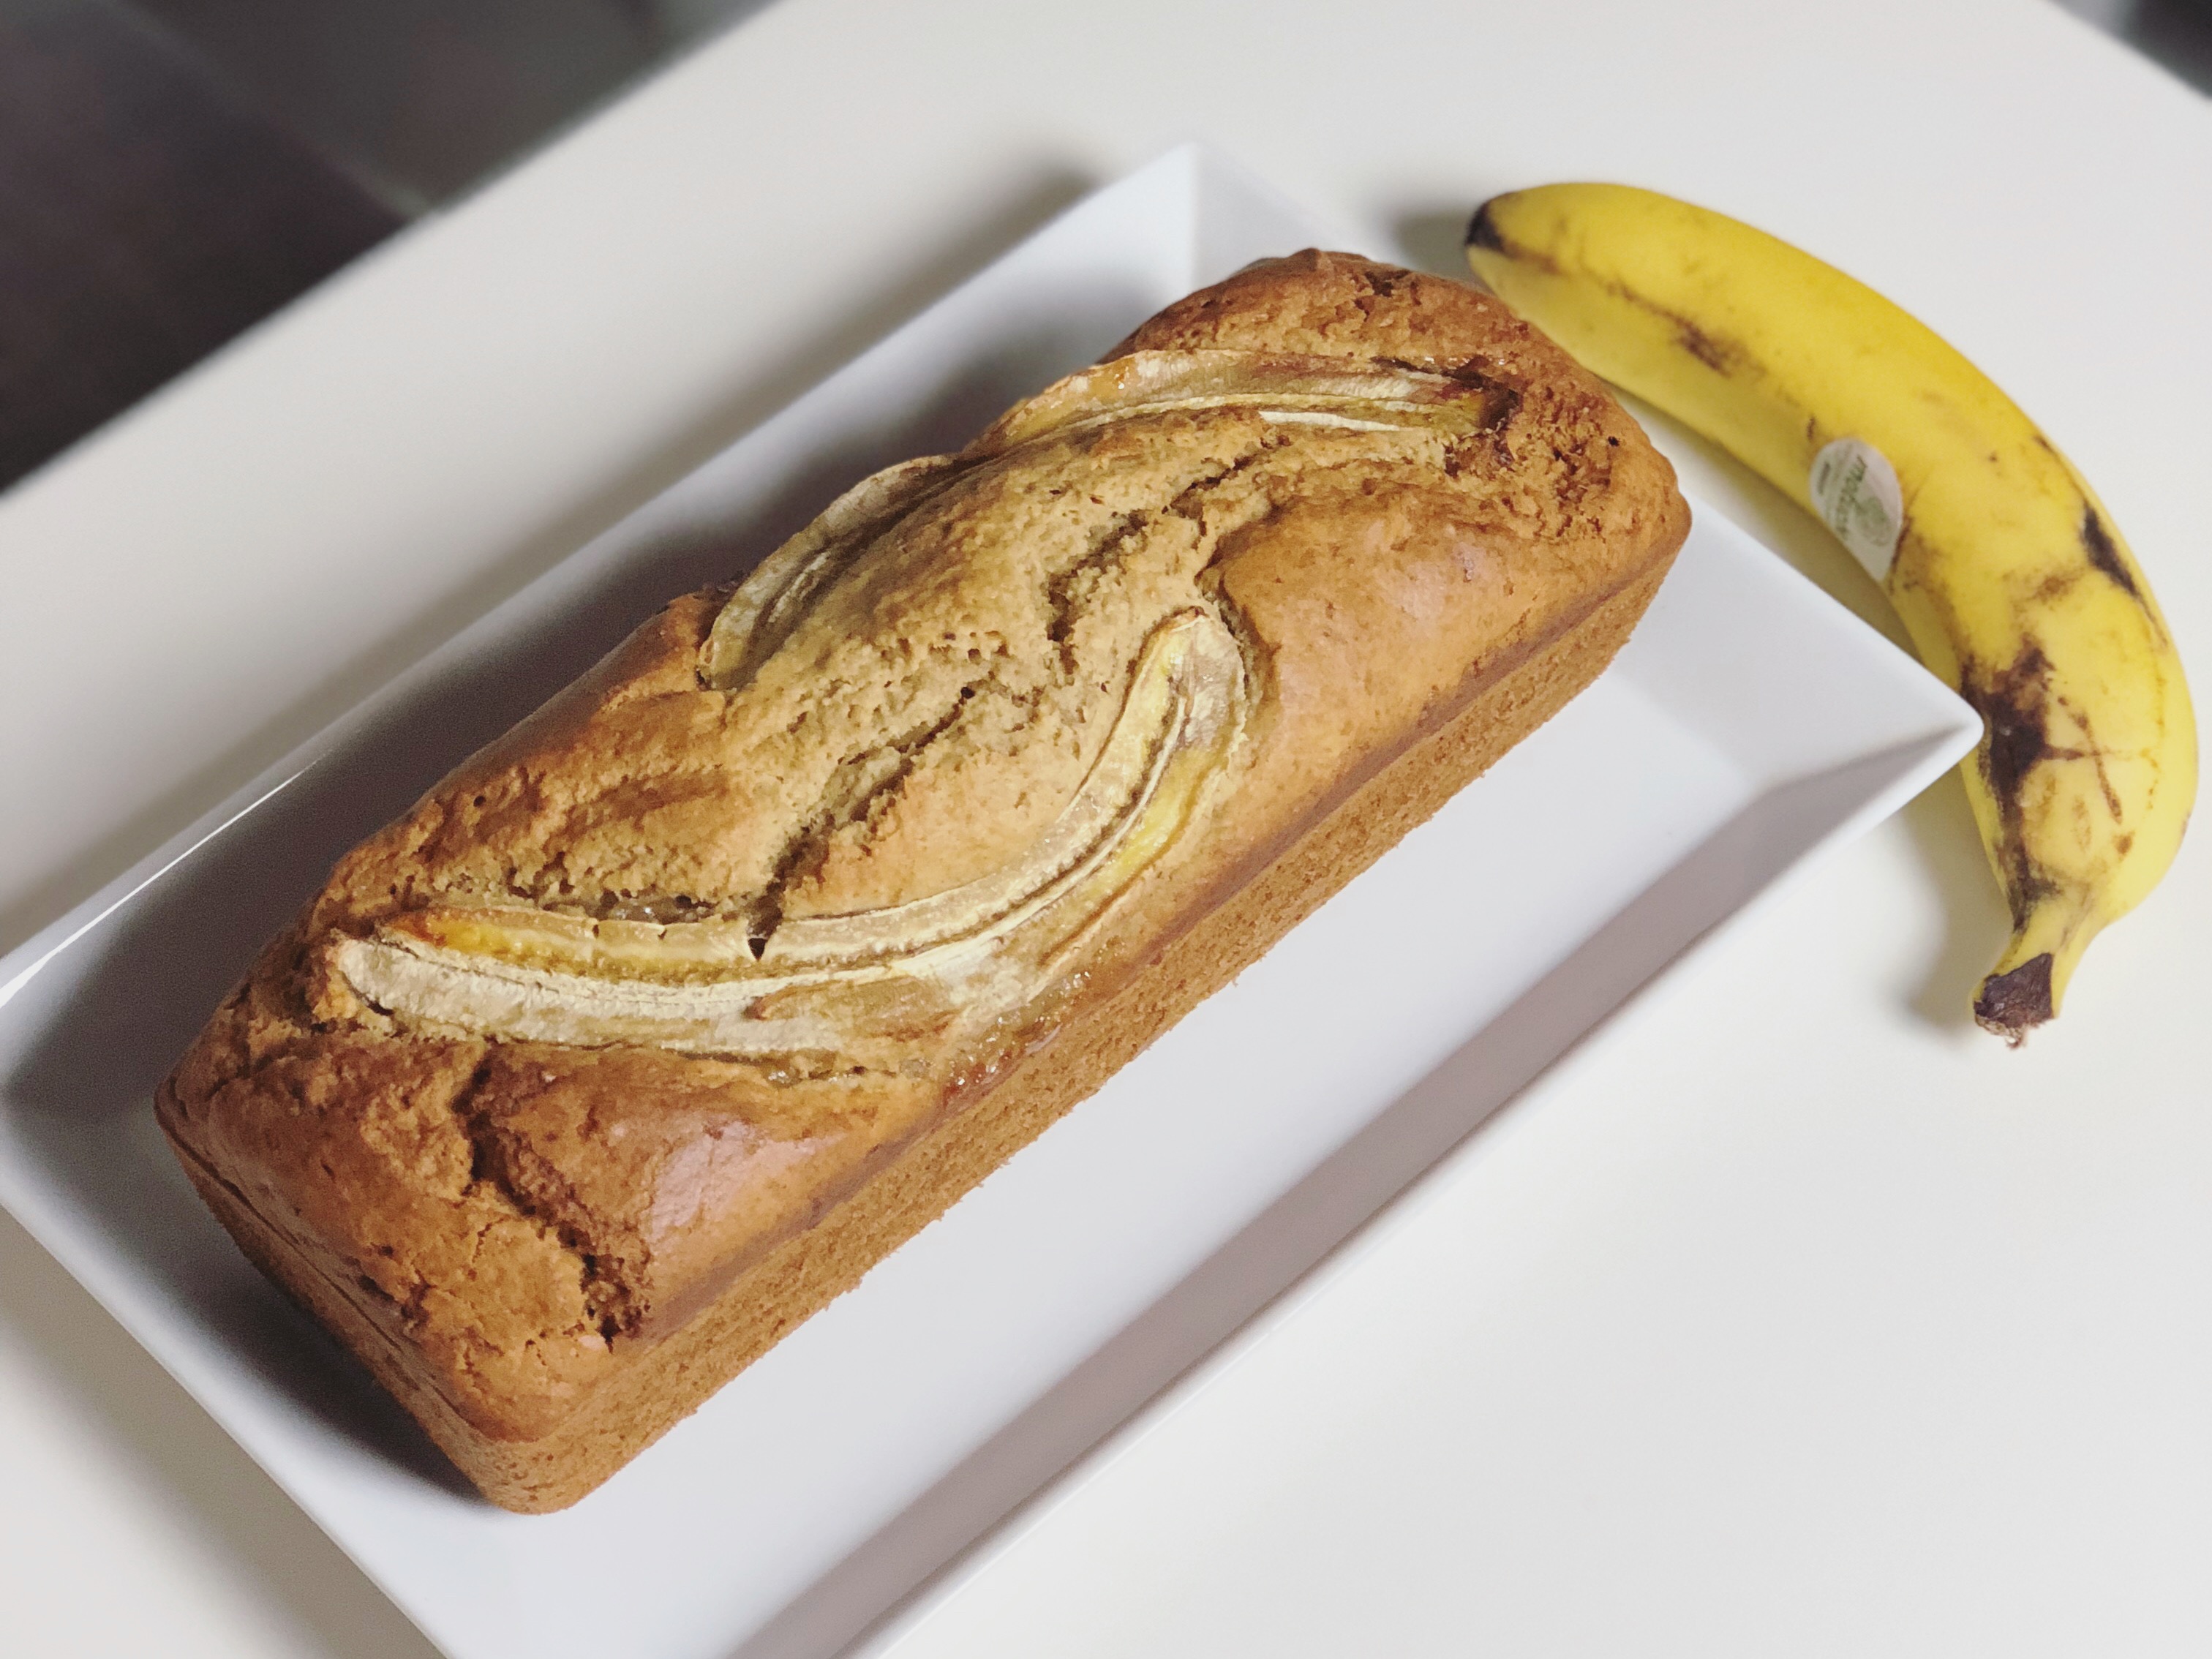 The Banana Bread 